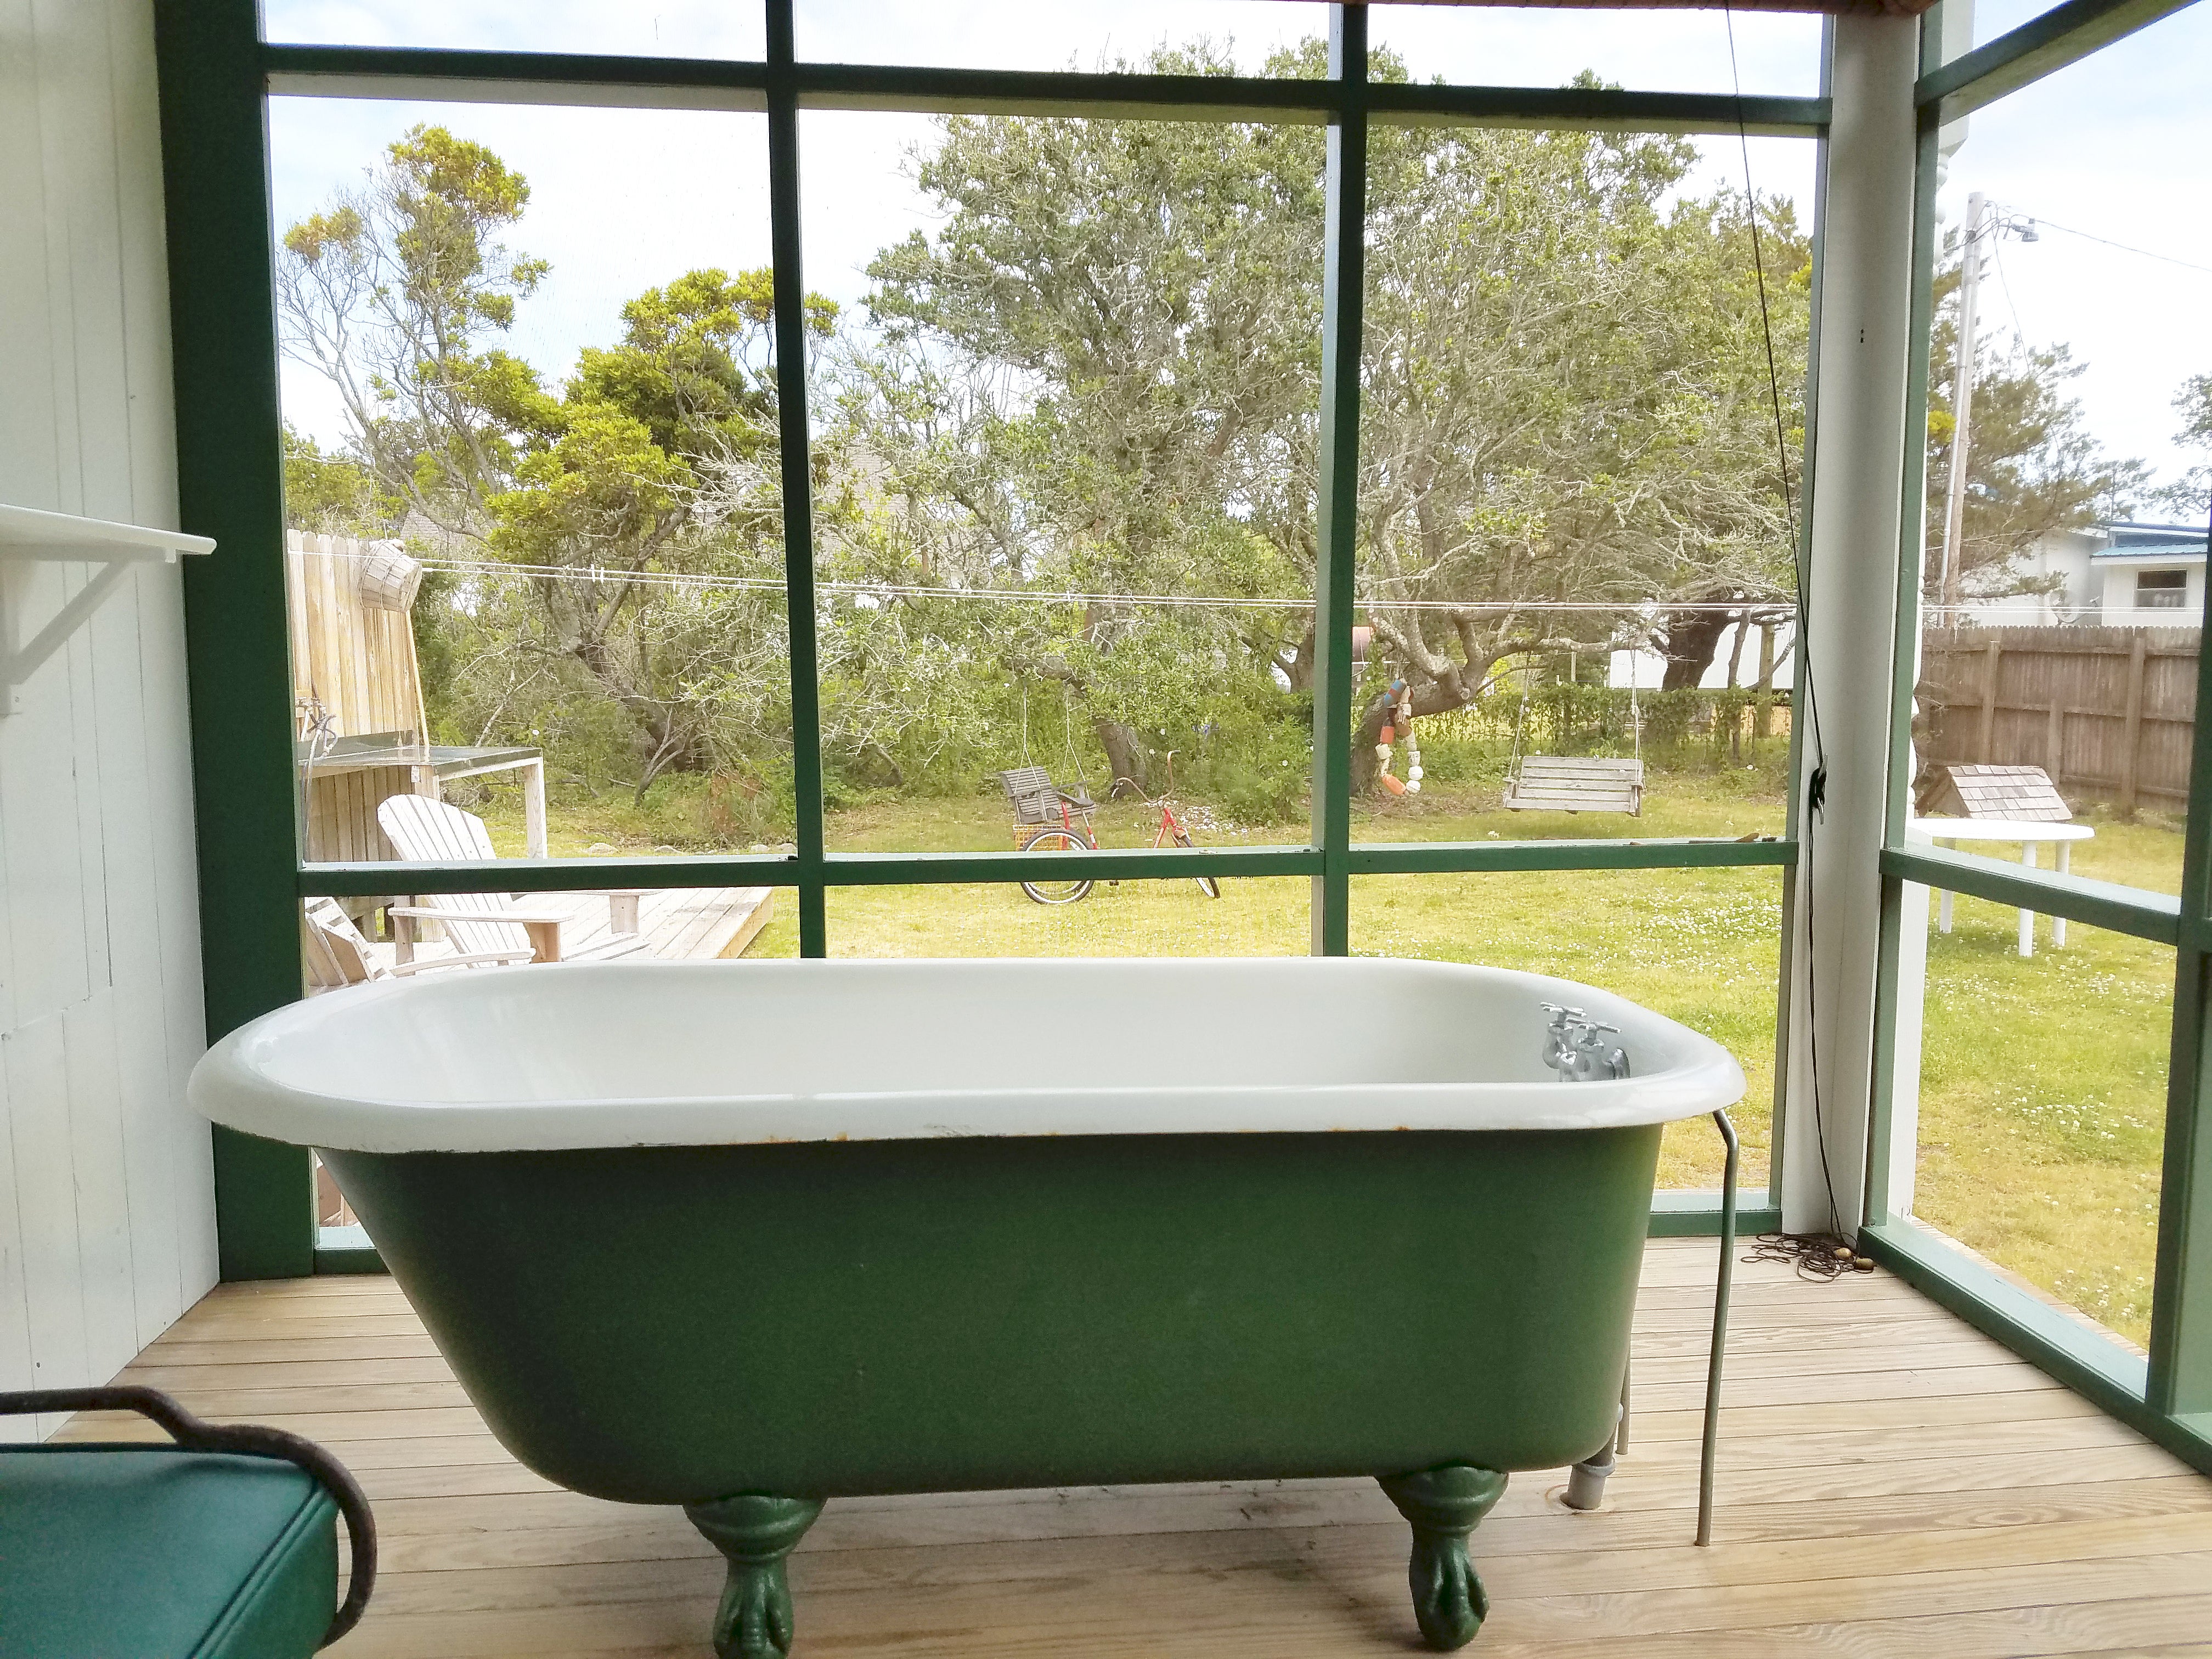 Bath Tub on Screened Porch